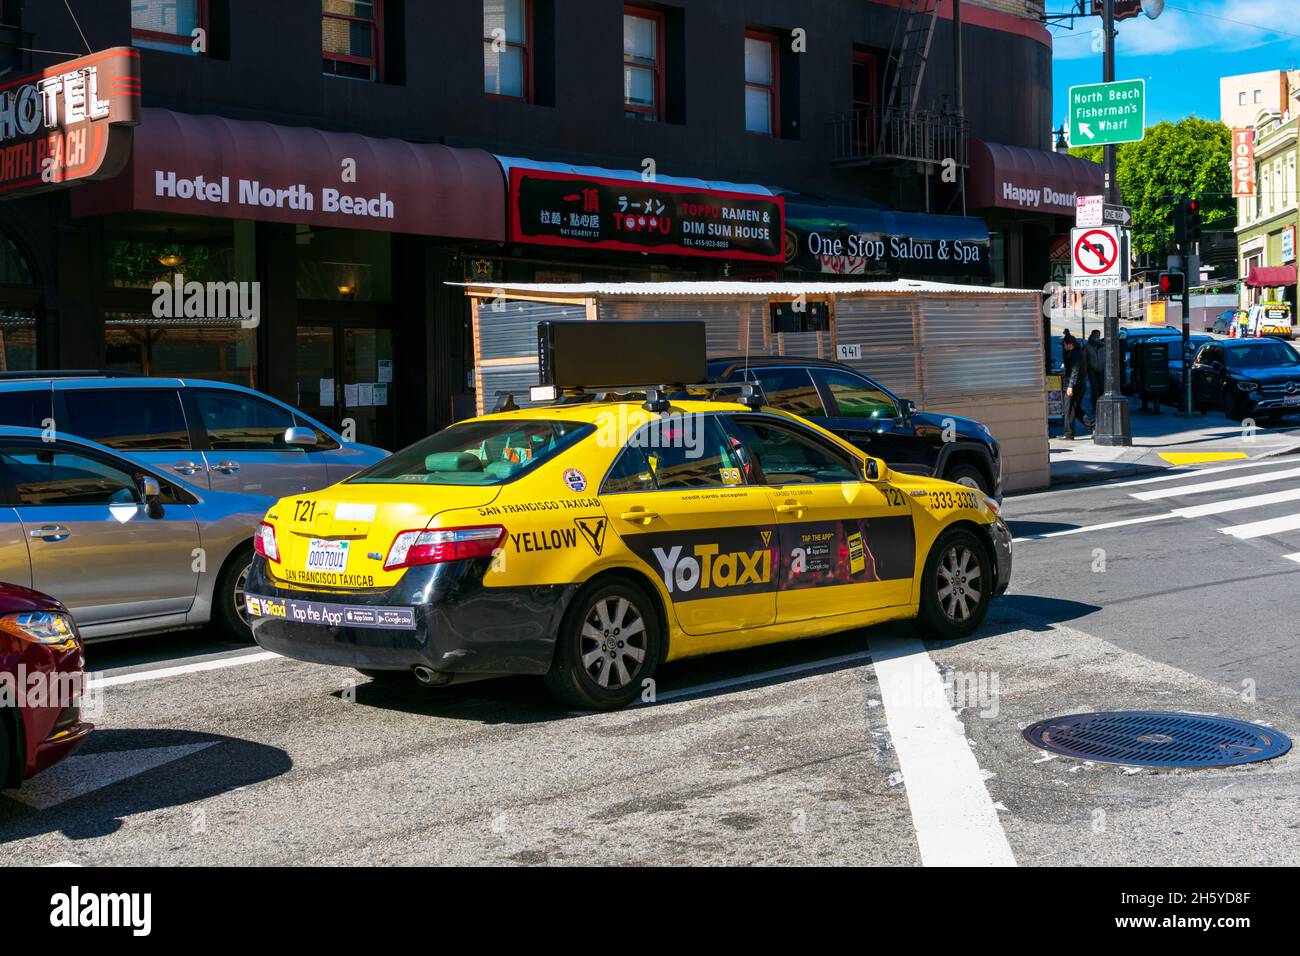 Taxi Yellow Cab veicolo sulla strada - San Francisco, California, Stati Uniti d'America - 2021 Foto Stock